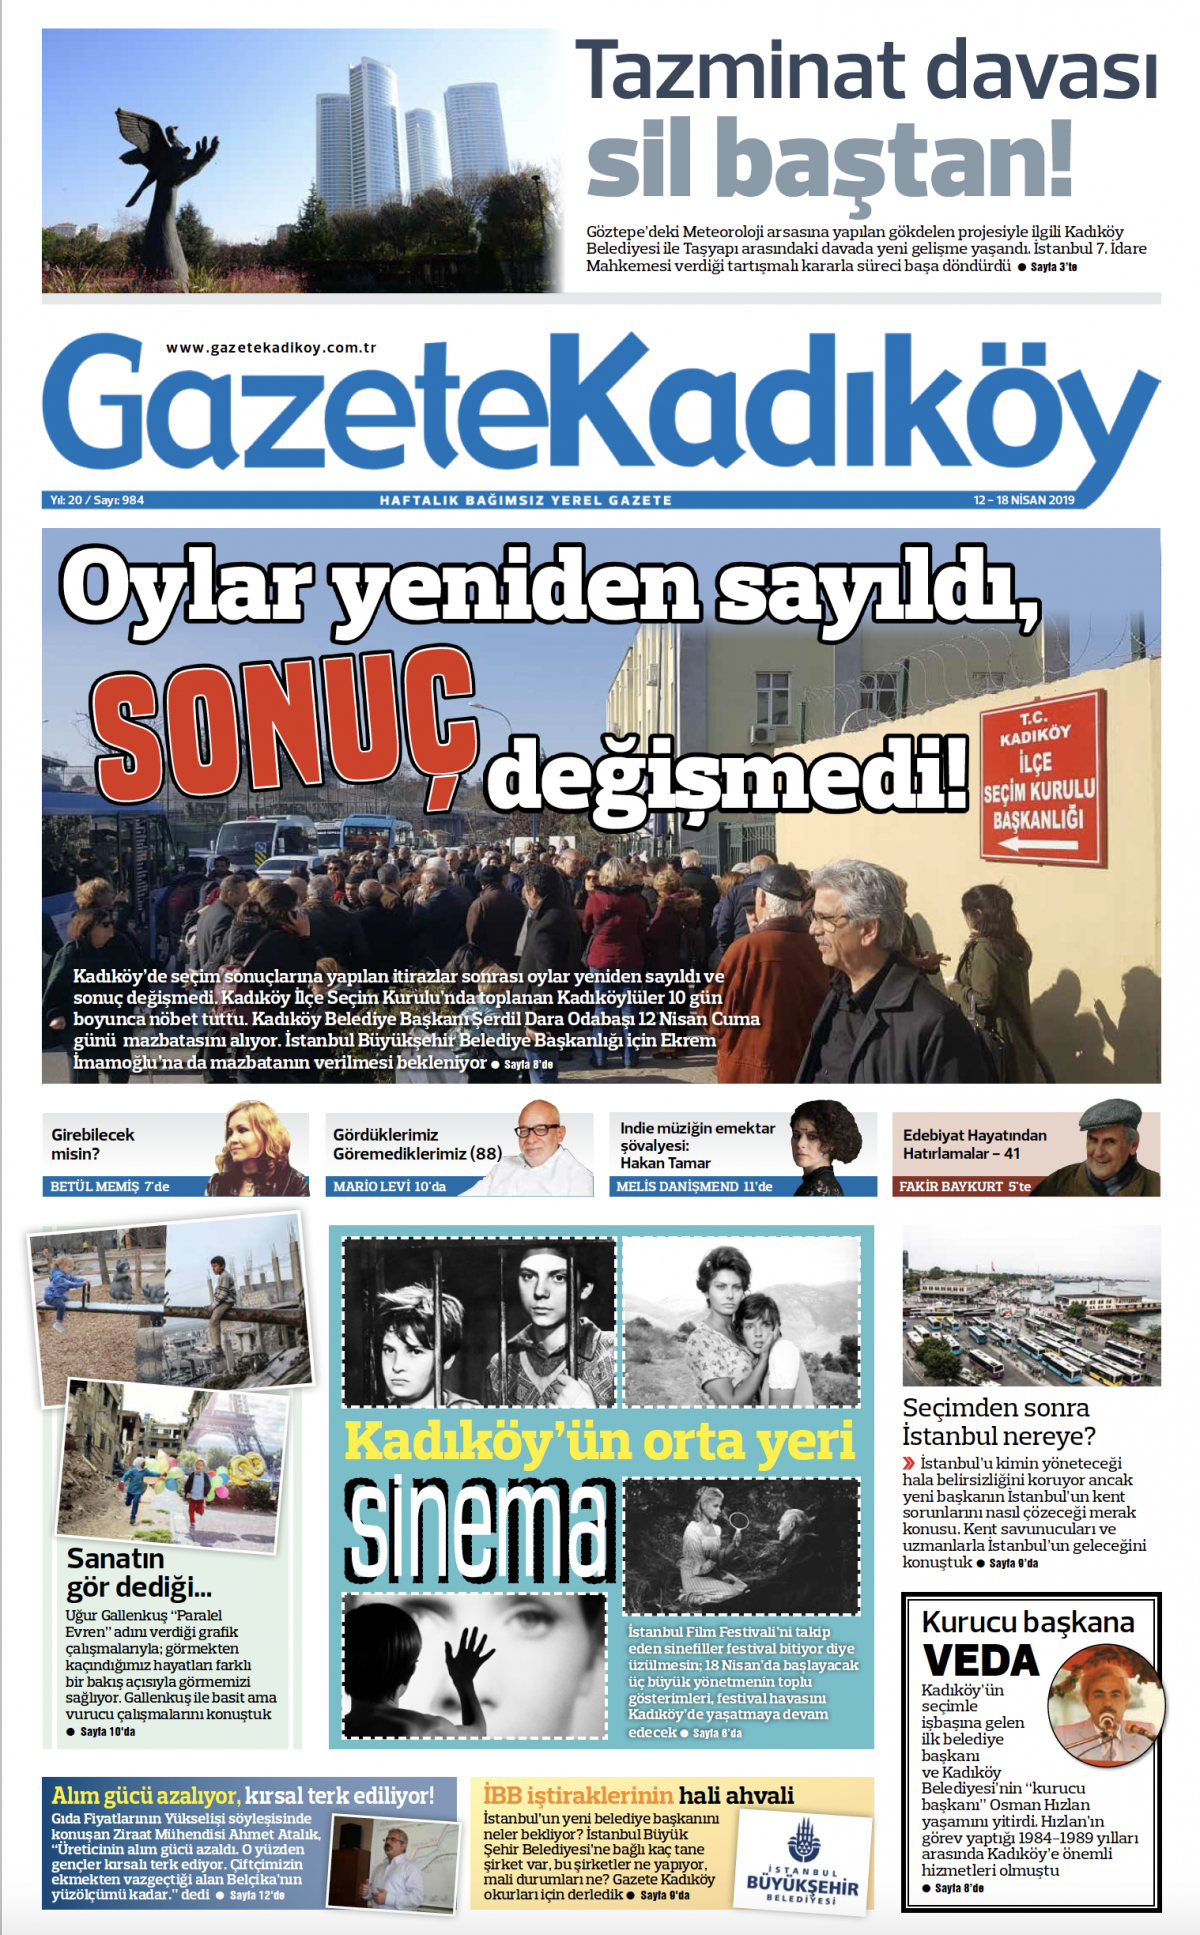 Gazete Kadıköy - 984. Sayı